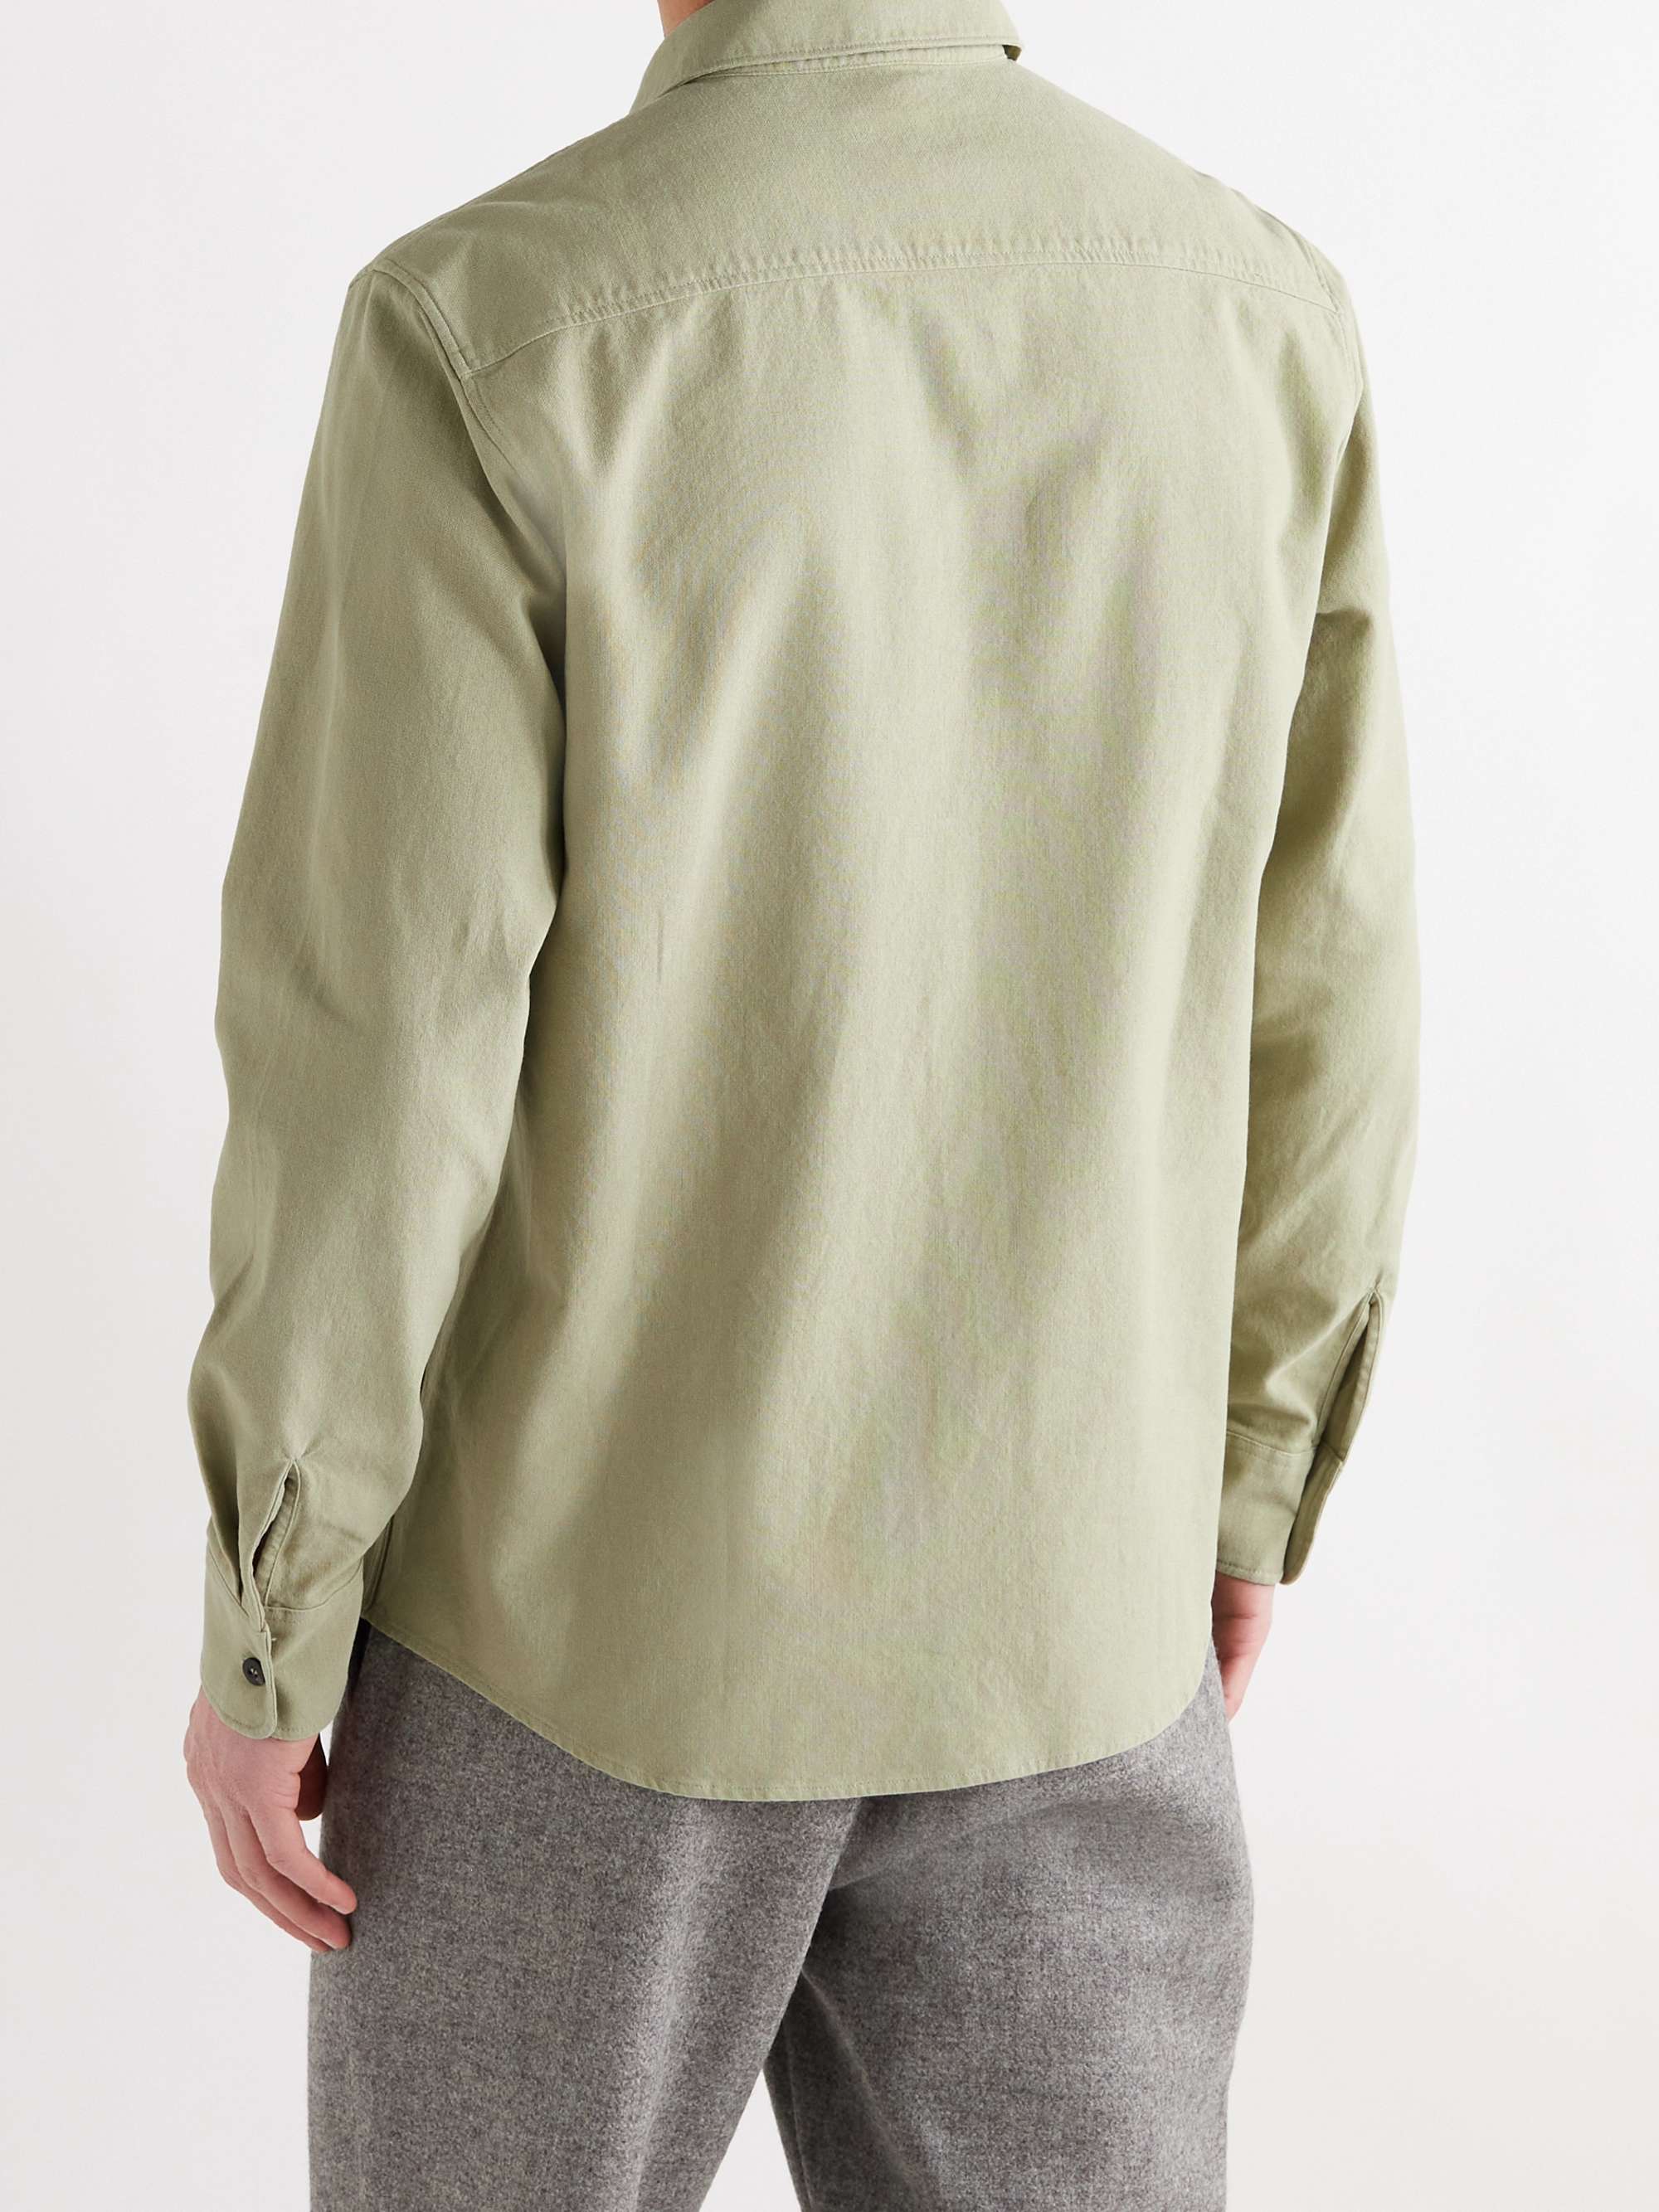 A.P.C. Cotton and Linen-Blend Shirt